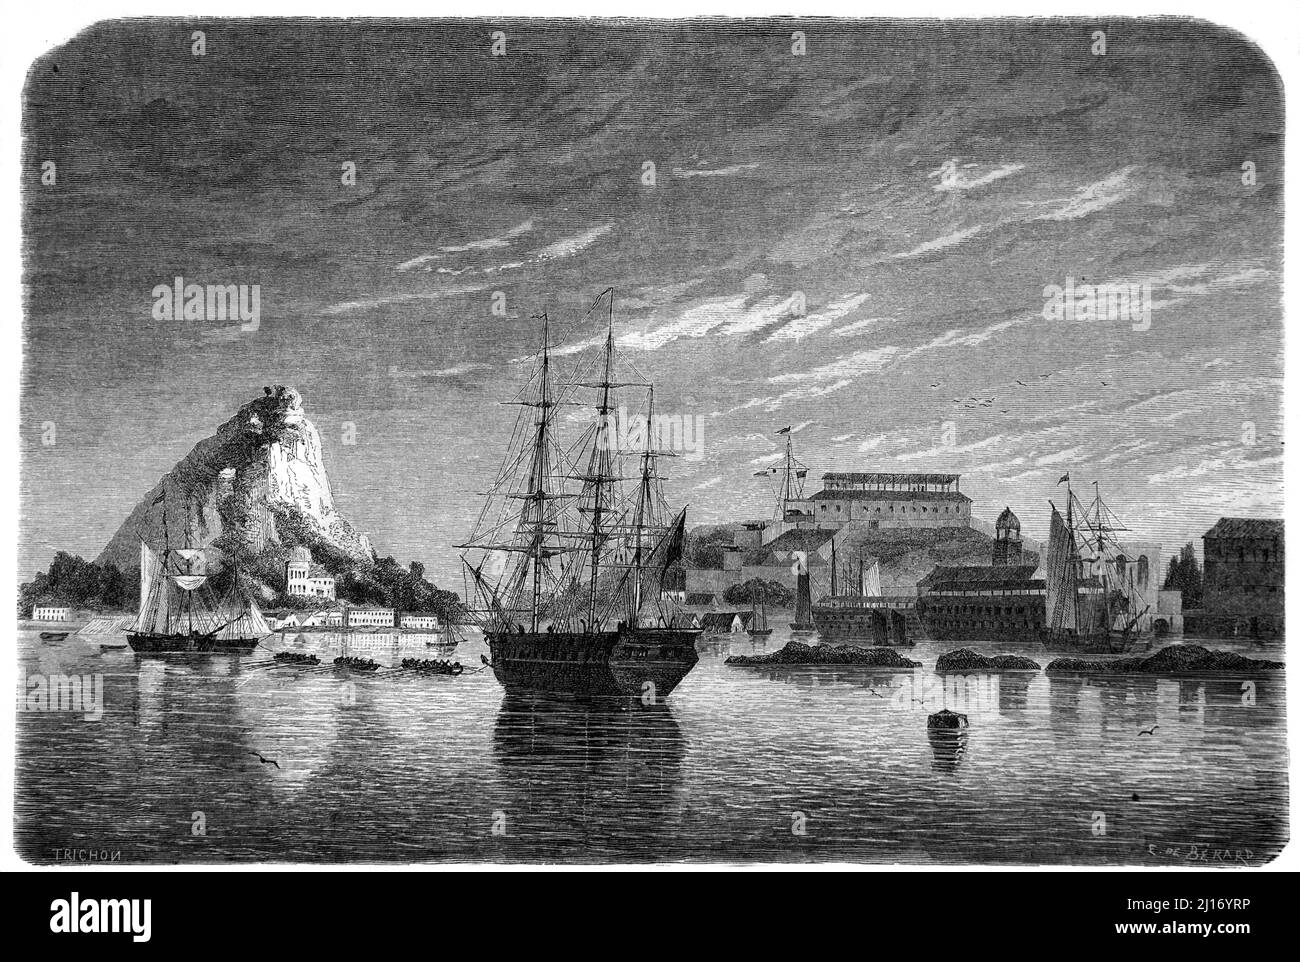 Vue tôt ou vue historique de la ville de St George montrant la baie, le port, le port et le Vieux fort George Bermudes. Illustration ancienne ou gravure 1860. Banque D'Images